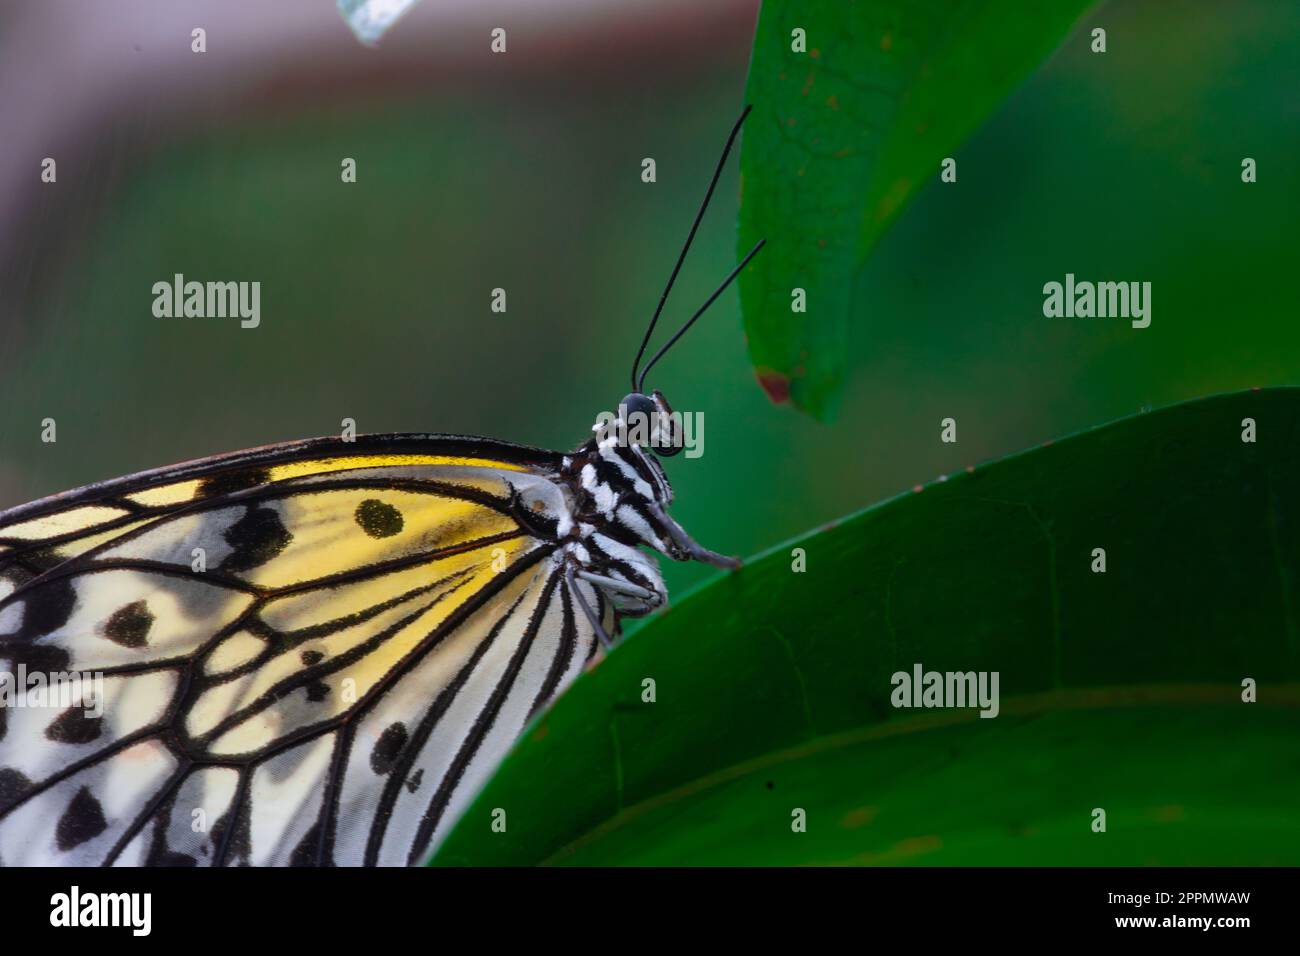 Nahaufnahme eines großen Nymphe-Schmetterlings auf einem üppigen grünen Blatt Stockfoto